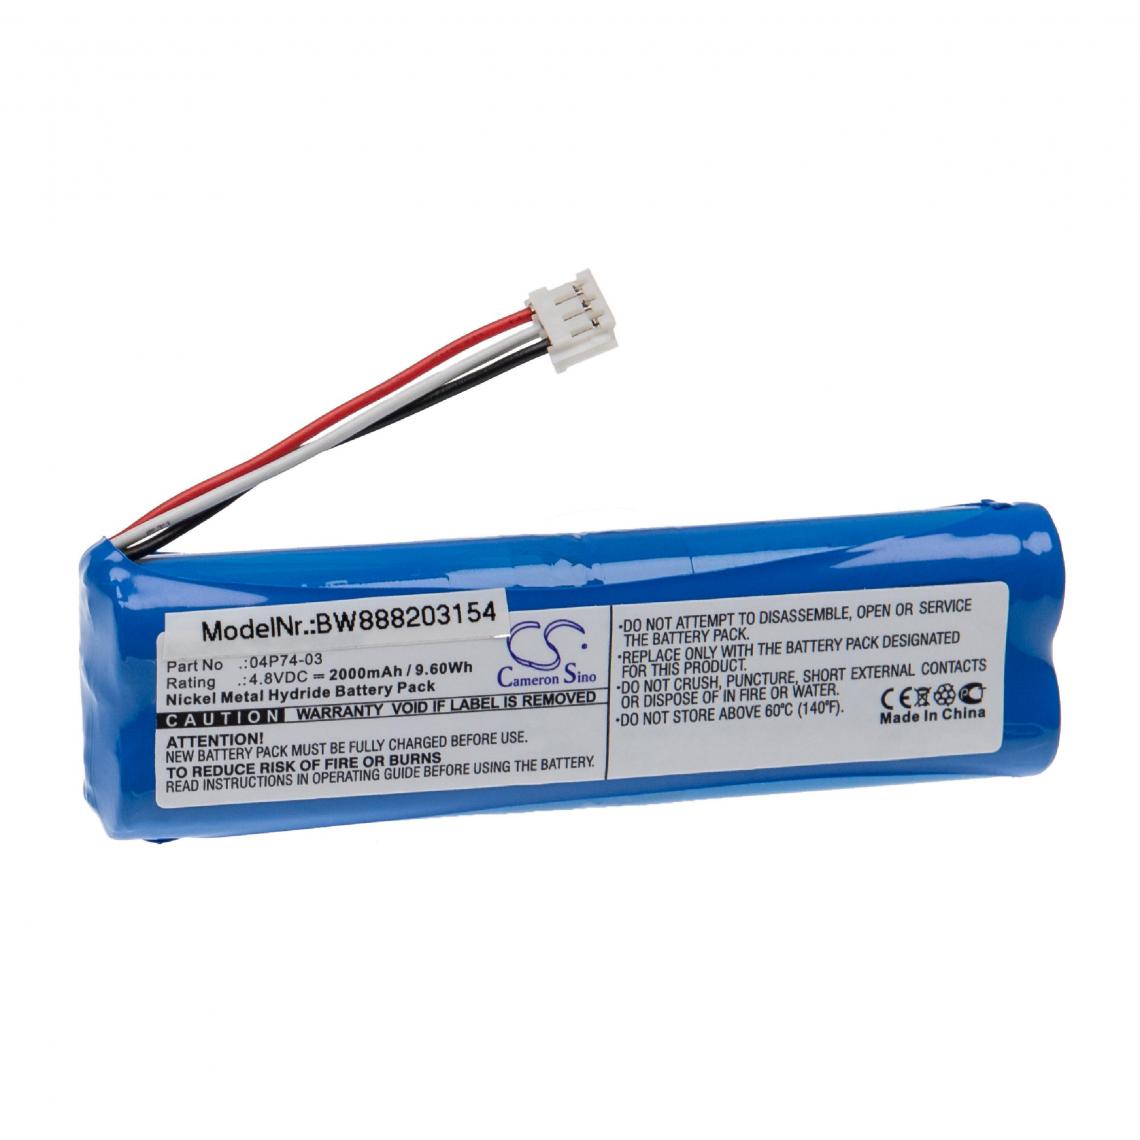 Vhbw - vhbw Batterie remplacement pour Abbott 04P74-03 pour appareil médical (2000mAh, 4,8V, NiMH) - Piles spécifiques